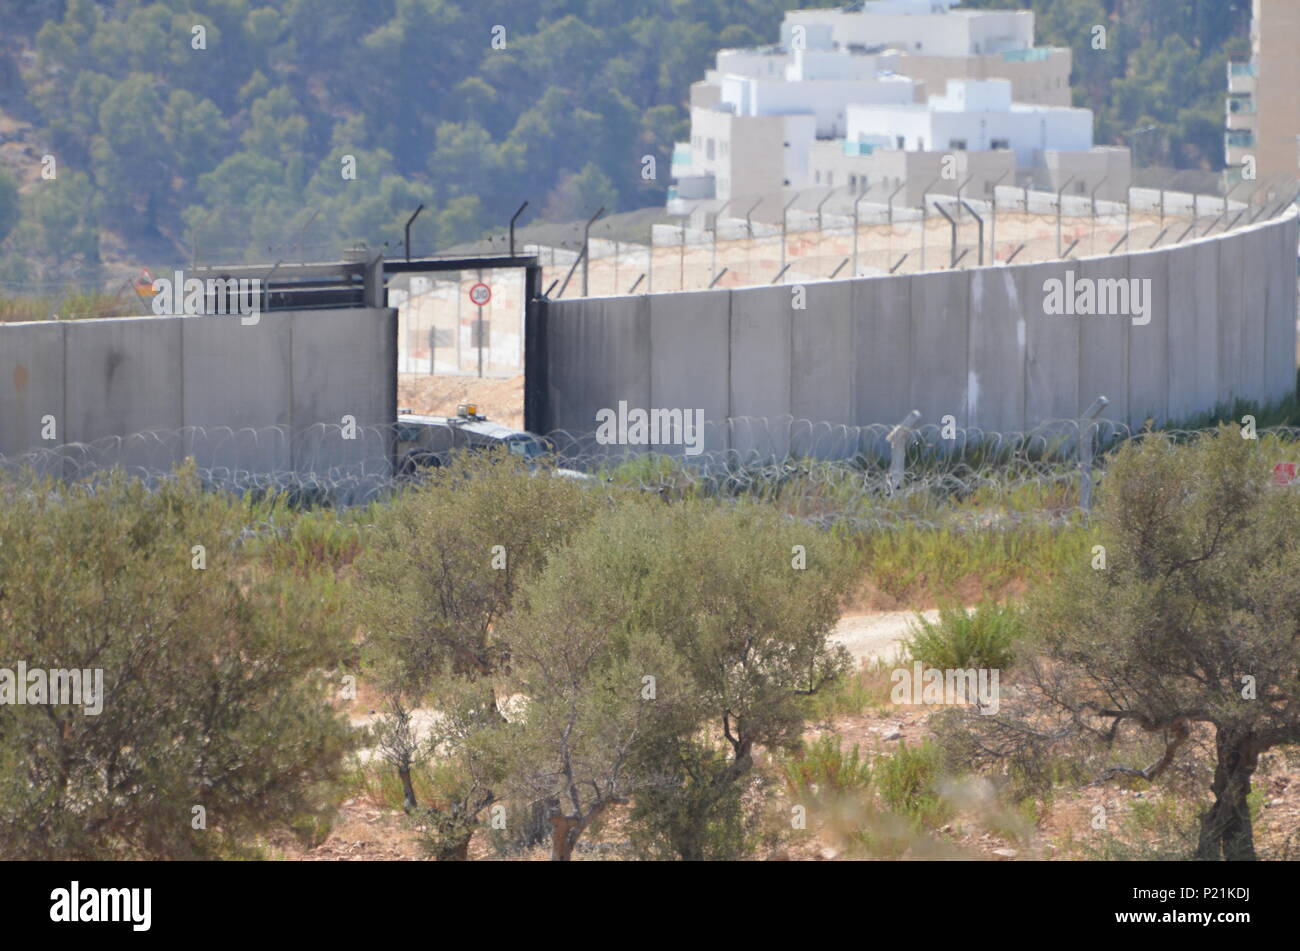 Il muro che separa l'insediamento israeliano dal villaggio palestinese di Bilin. Bilin è un villaggio in Palestina che regolarmente proteste la costruzione dei vicini insediamenti israeliani. La locale popolazione palestinese ritengono insediamenti israeliani sono illegali e che occupano la terra originariamente di proprietà di famiglie palestinesi che vivono nel villaggio. Foto Stock